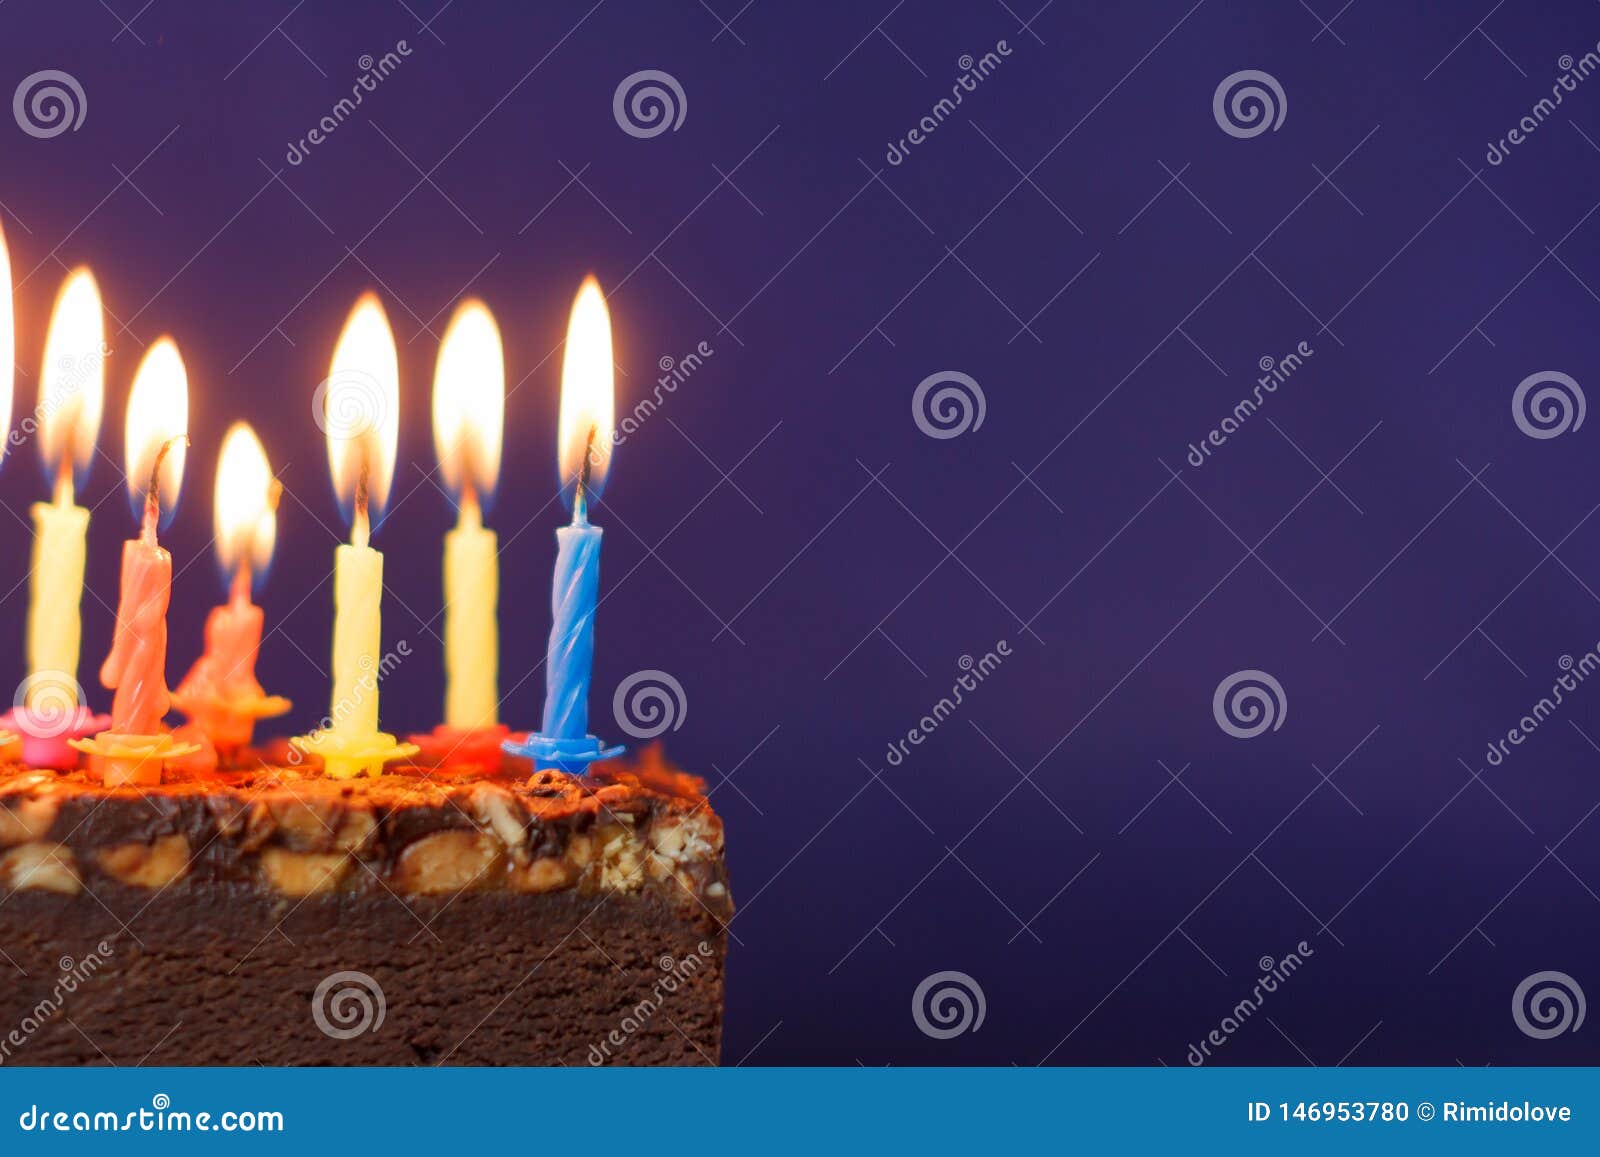 Bánh sinh nhật Brownie thật ngon và độc đáo! Bạn có muốn khám phá điều này trong hình ảnh không? Hãy cùng xem qua bộ sưu tập ảnh đầy màu sắc về những chiếc bánh sinh nhật ngon miệng này!